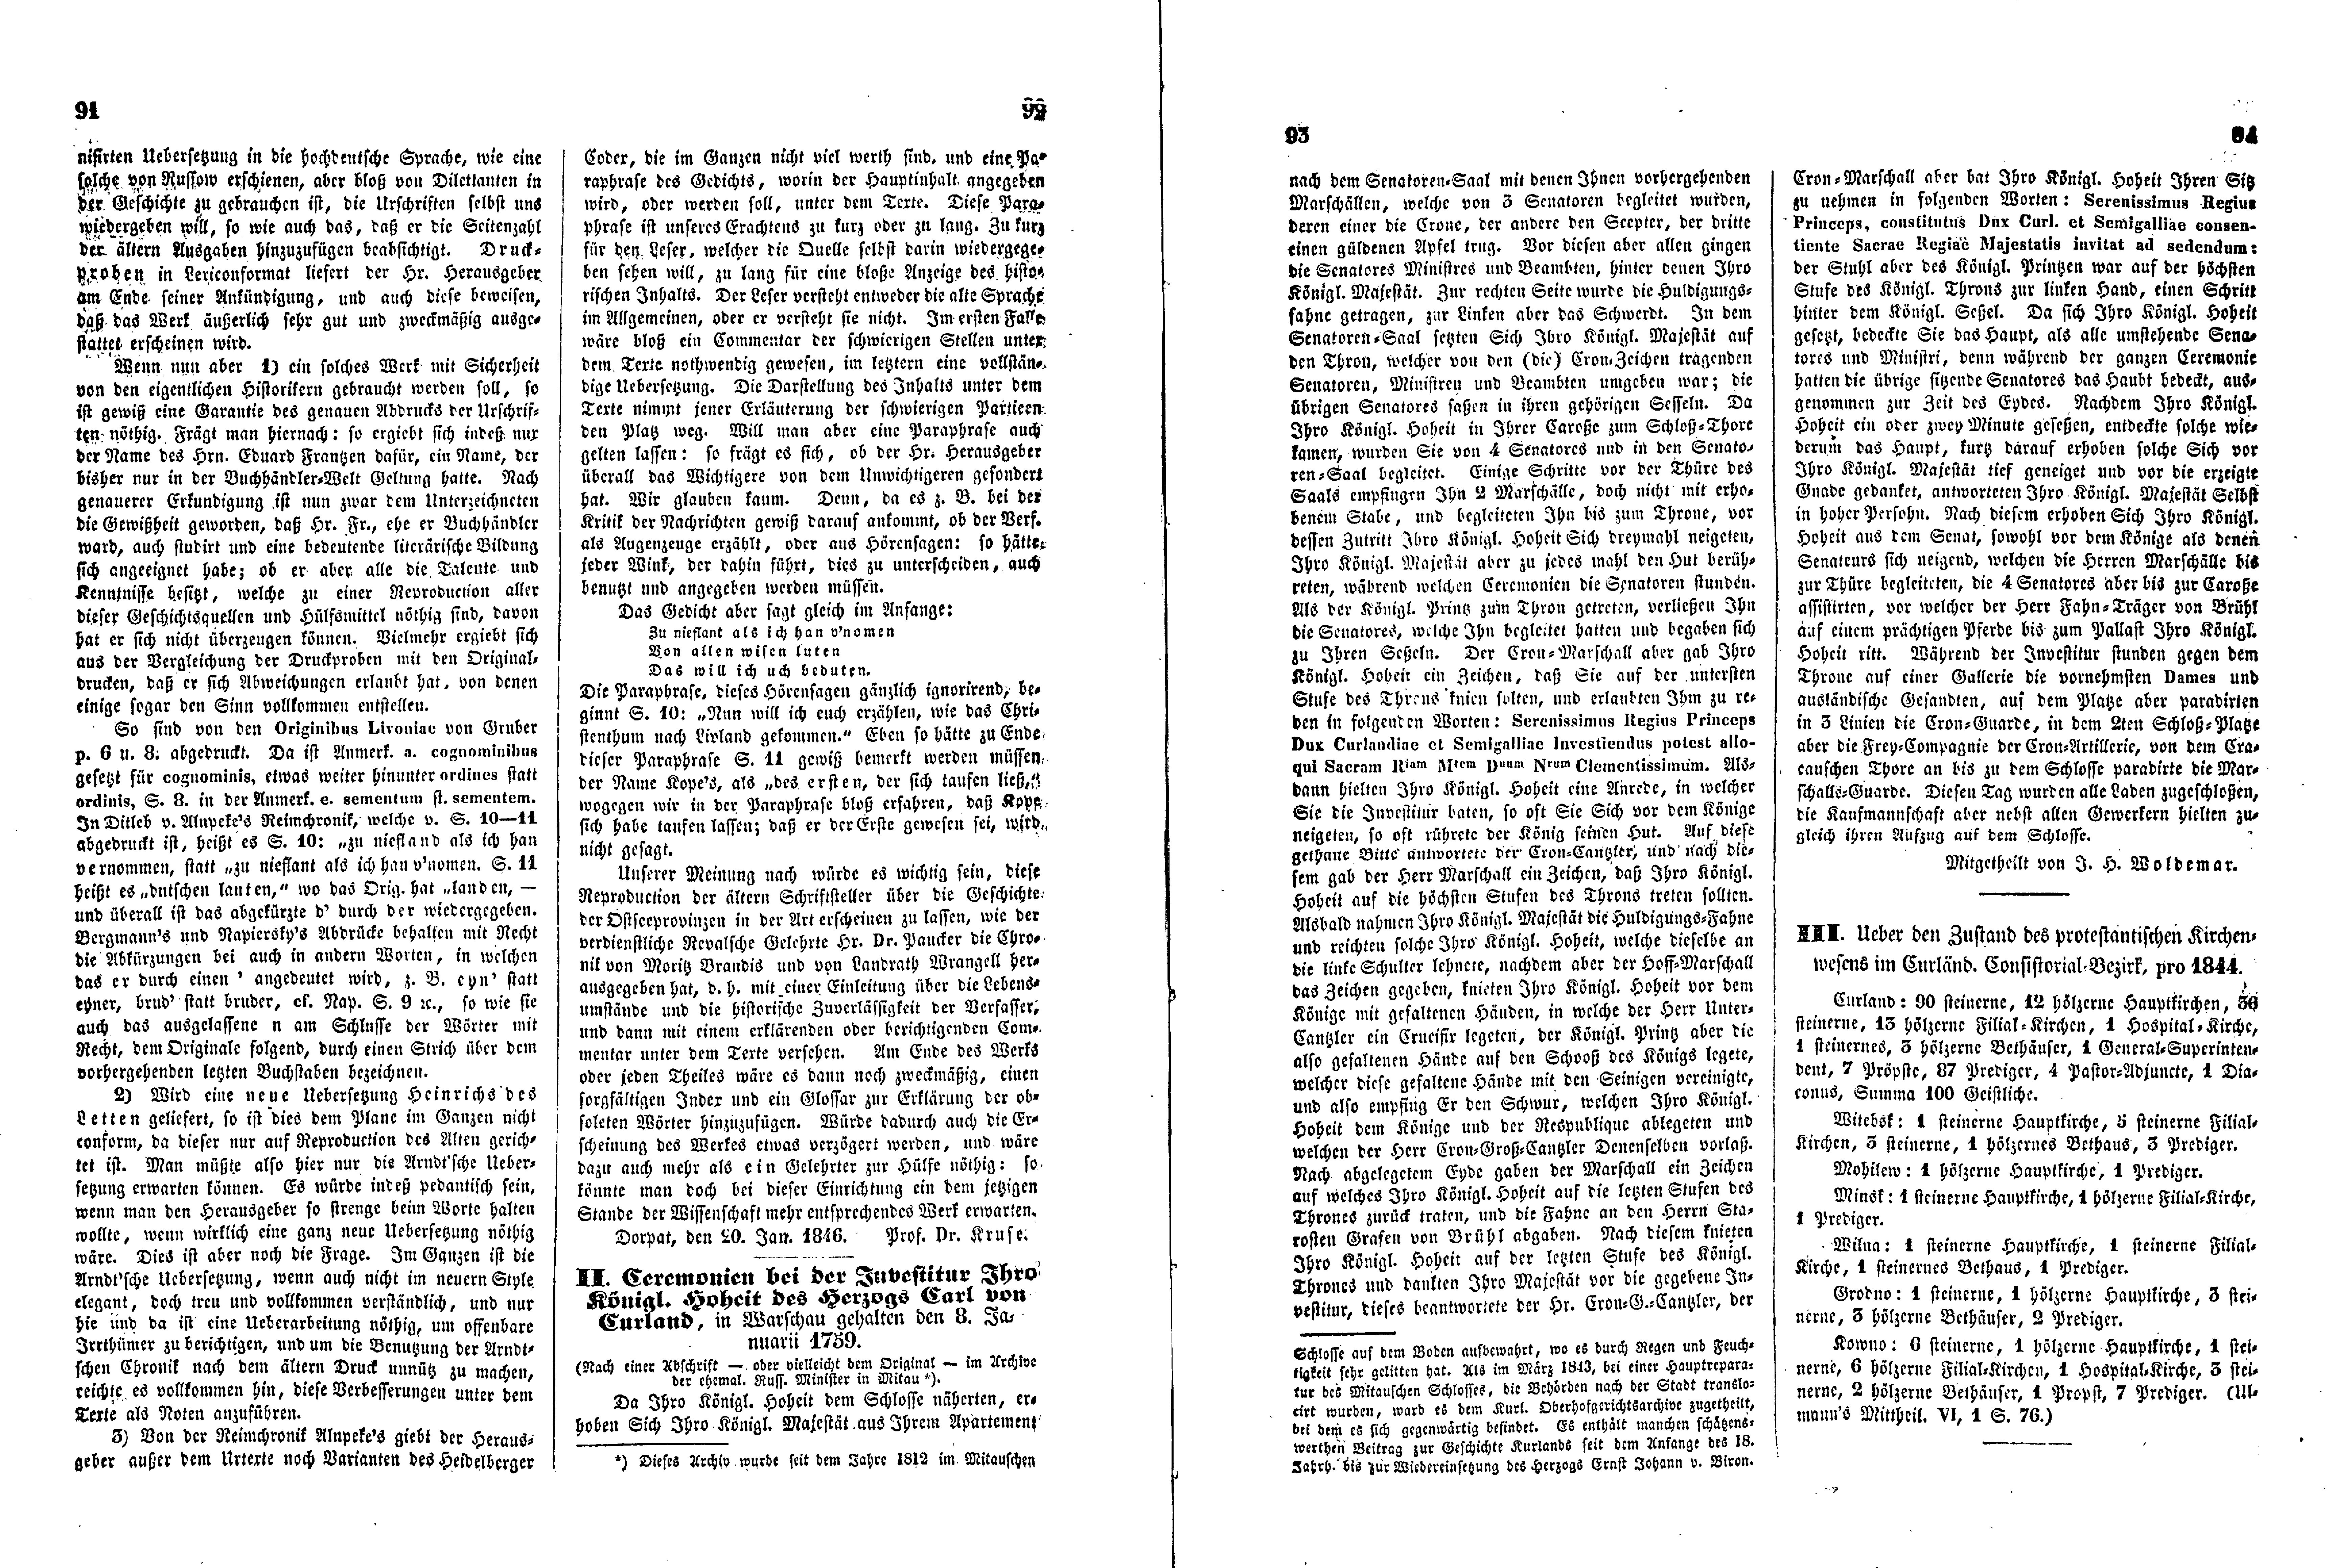 Das Inland [11] (1846) | 28. (91-94) Haupttext